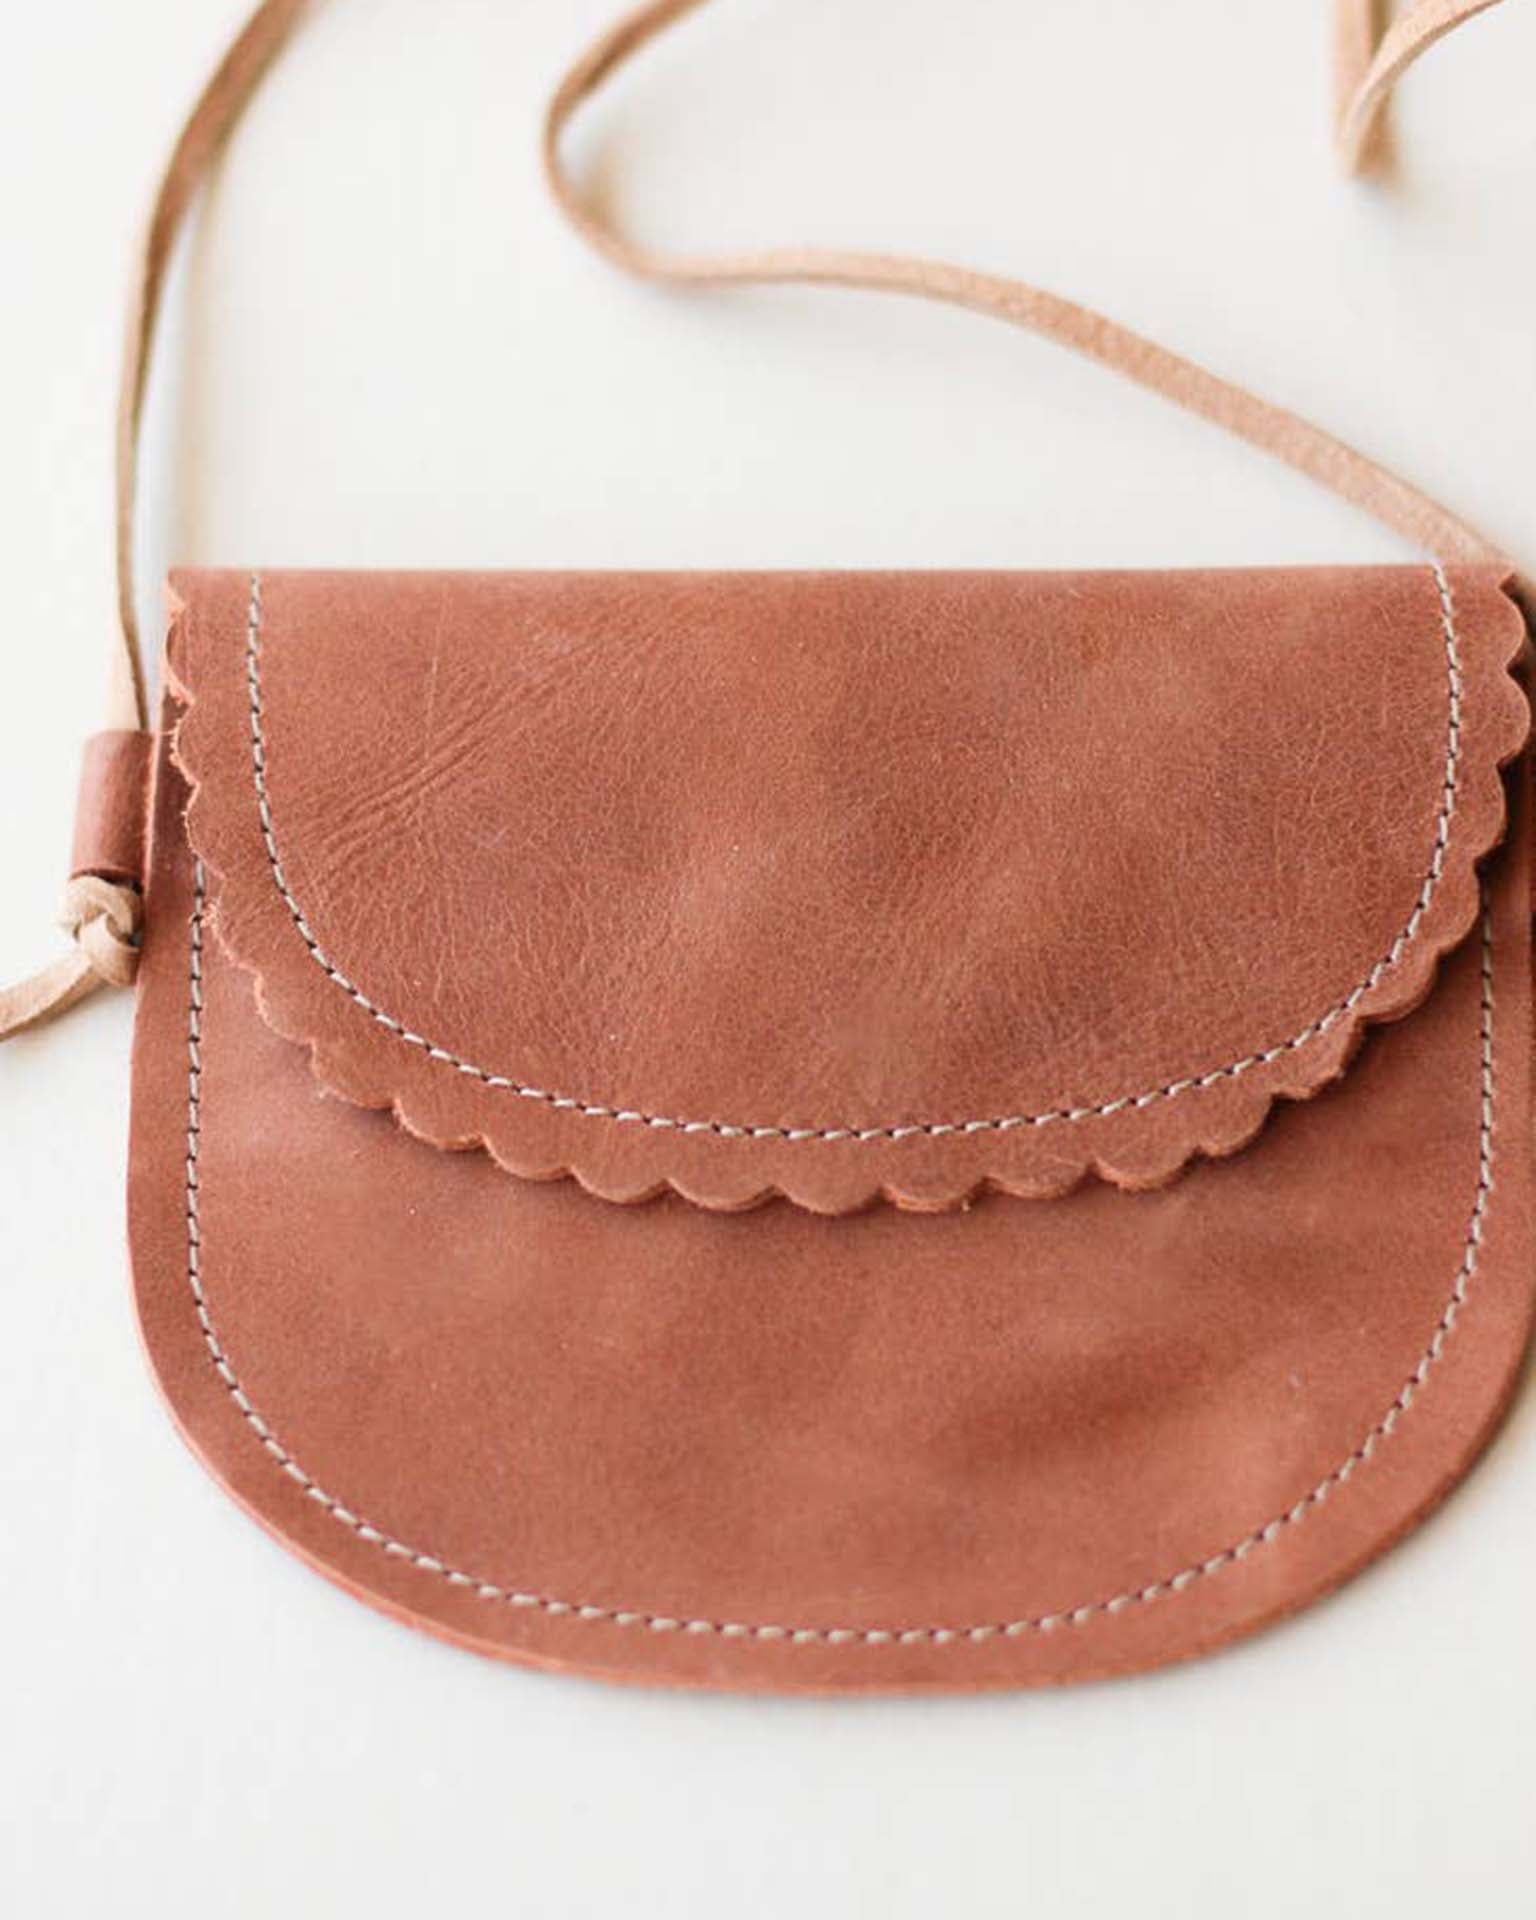 Madison West New Leather Purse | eBay